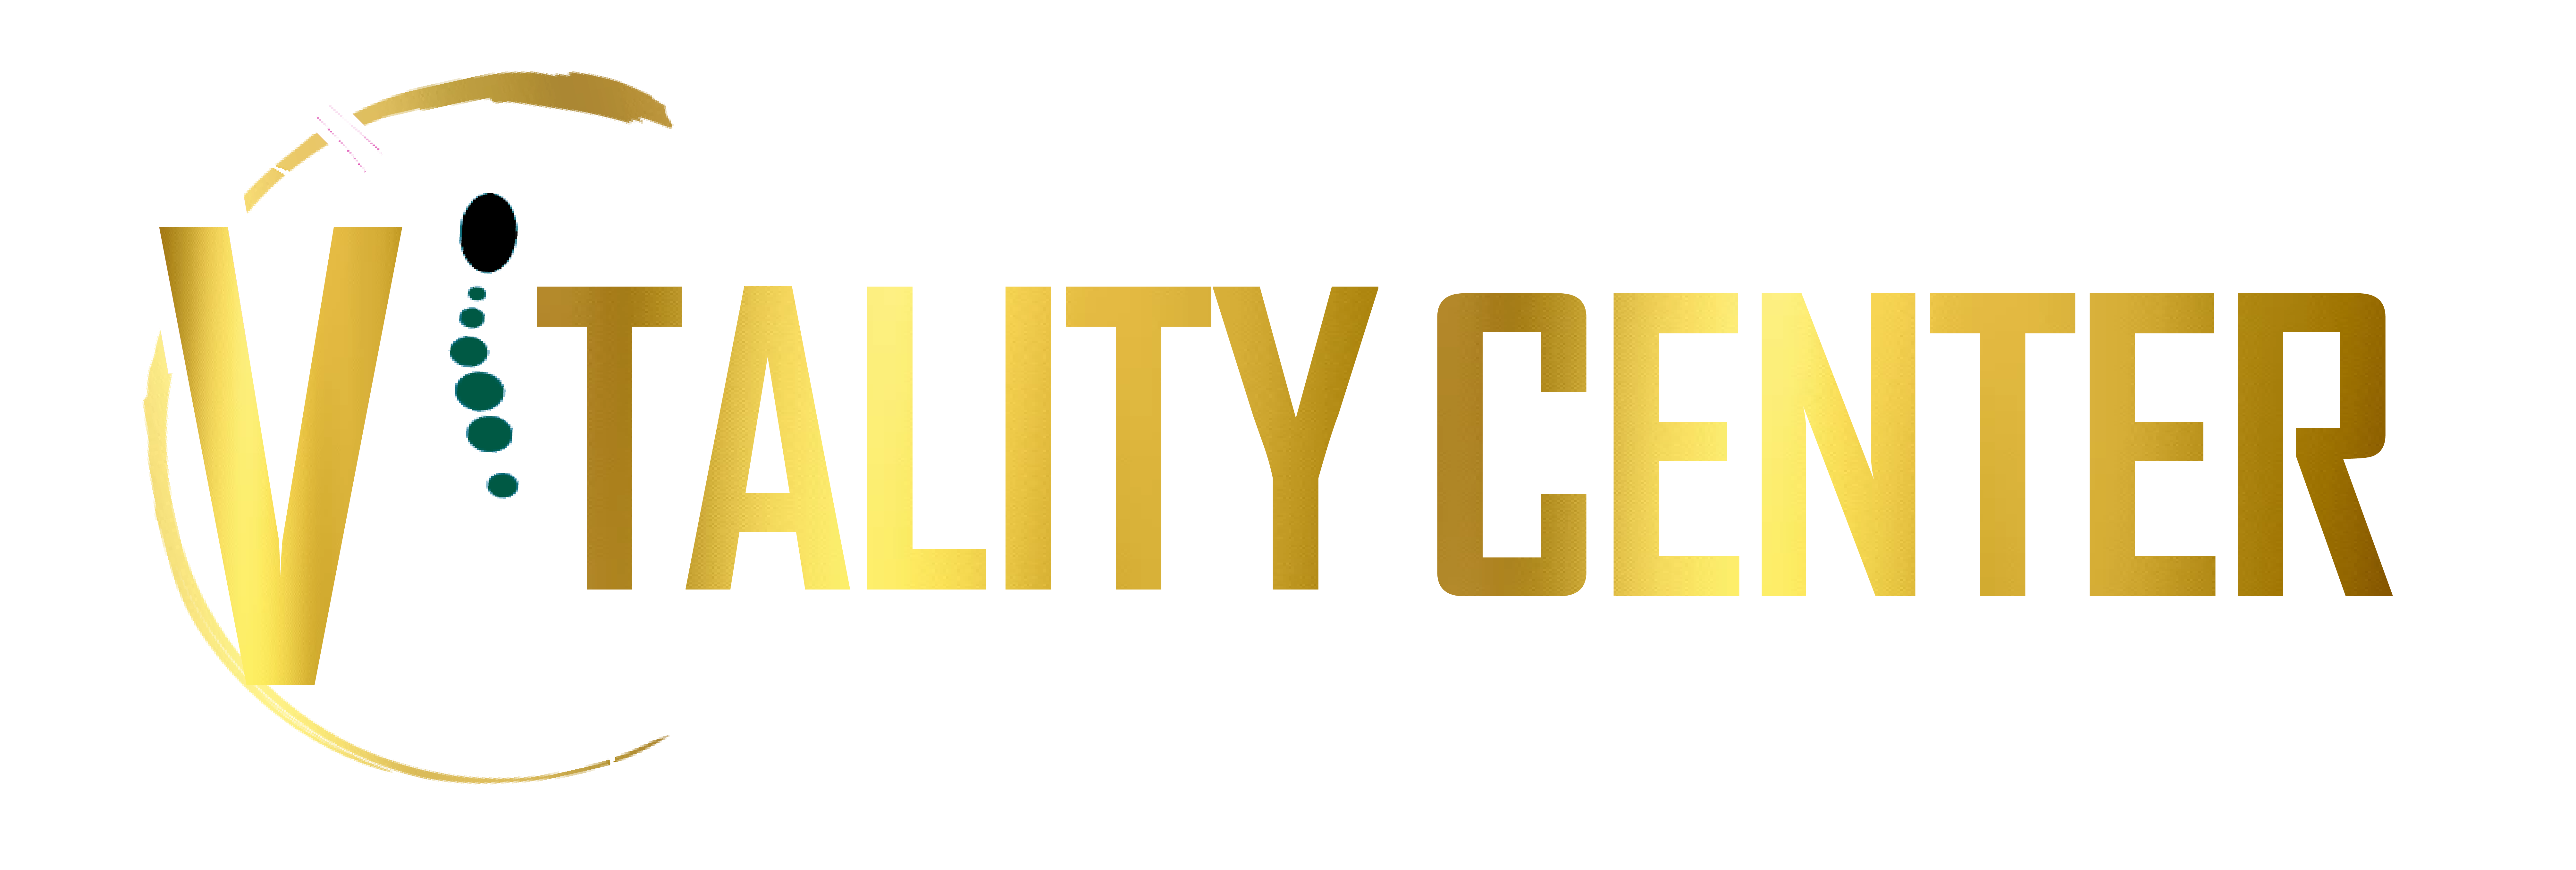 Vitality Center